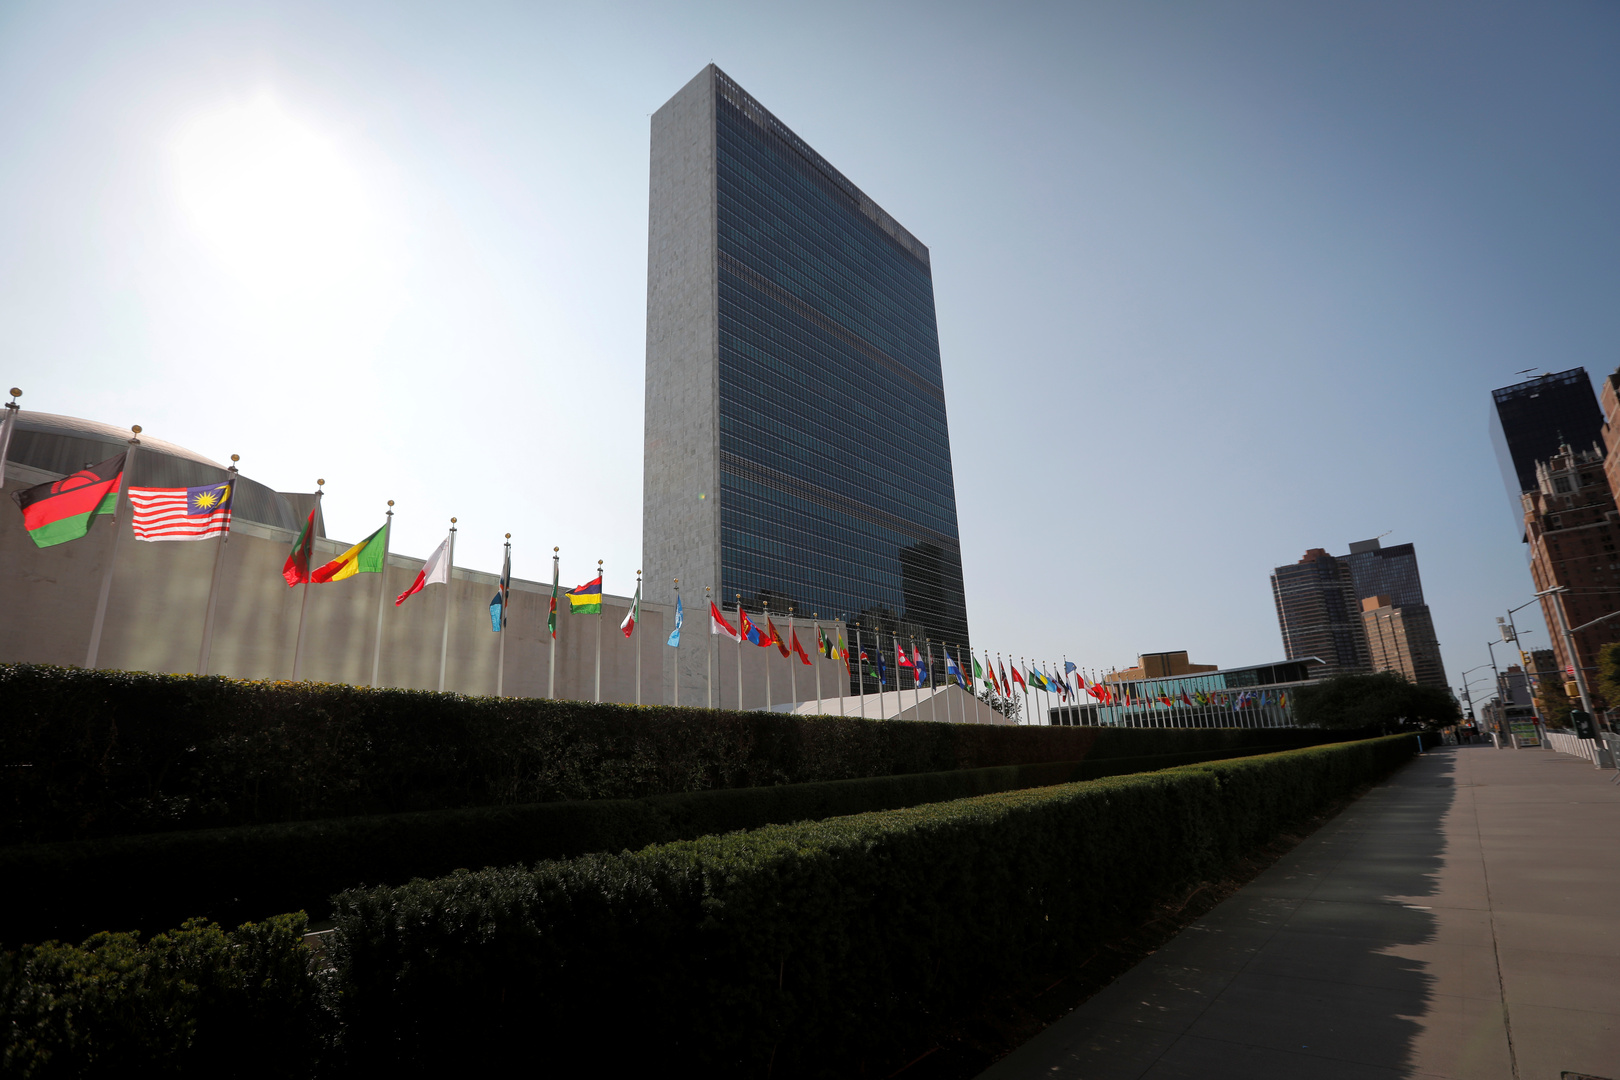 الجمعية العامة للأمم المتحدة تعتمد قرارات بشأن القضية الفلسطينية والجولان المحتل